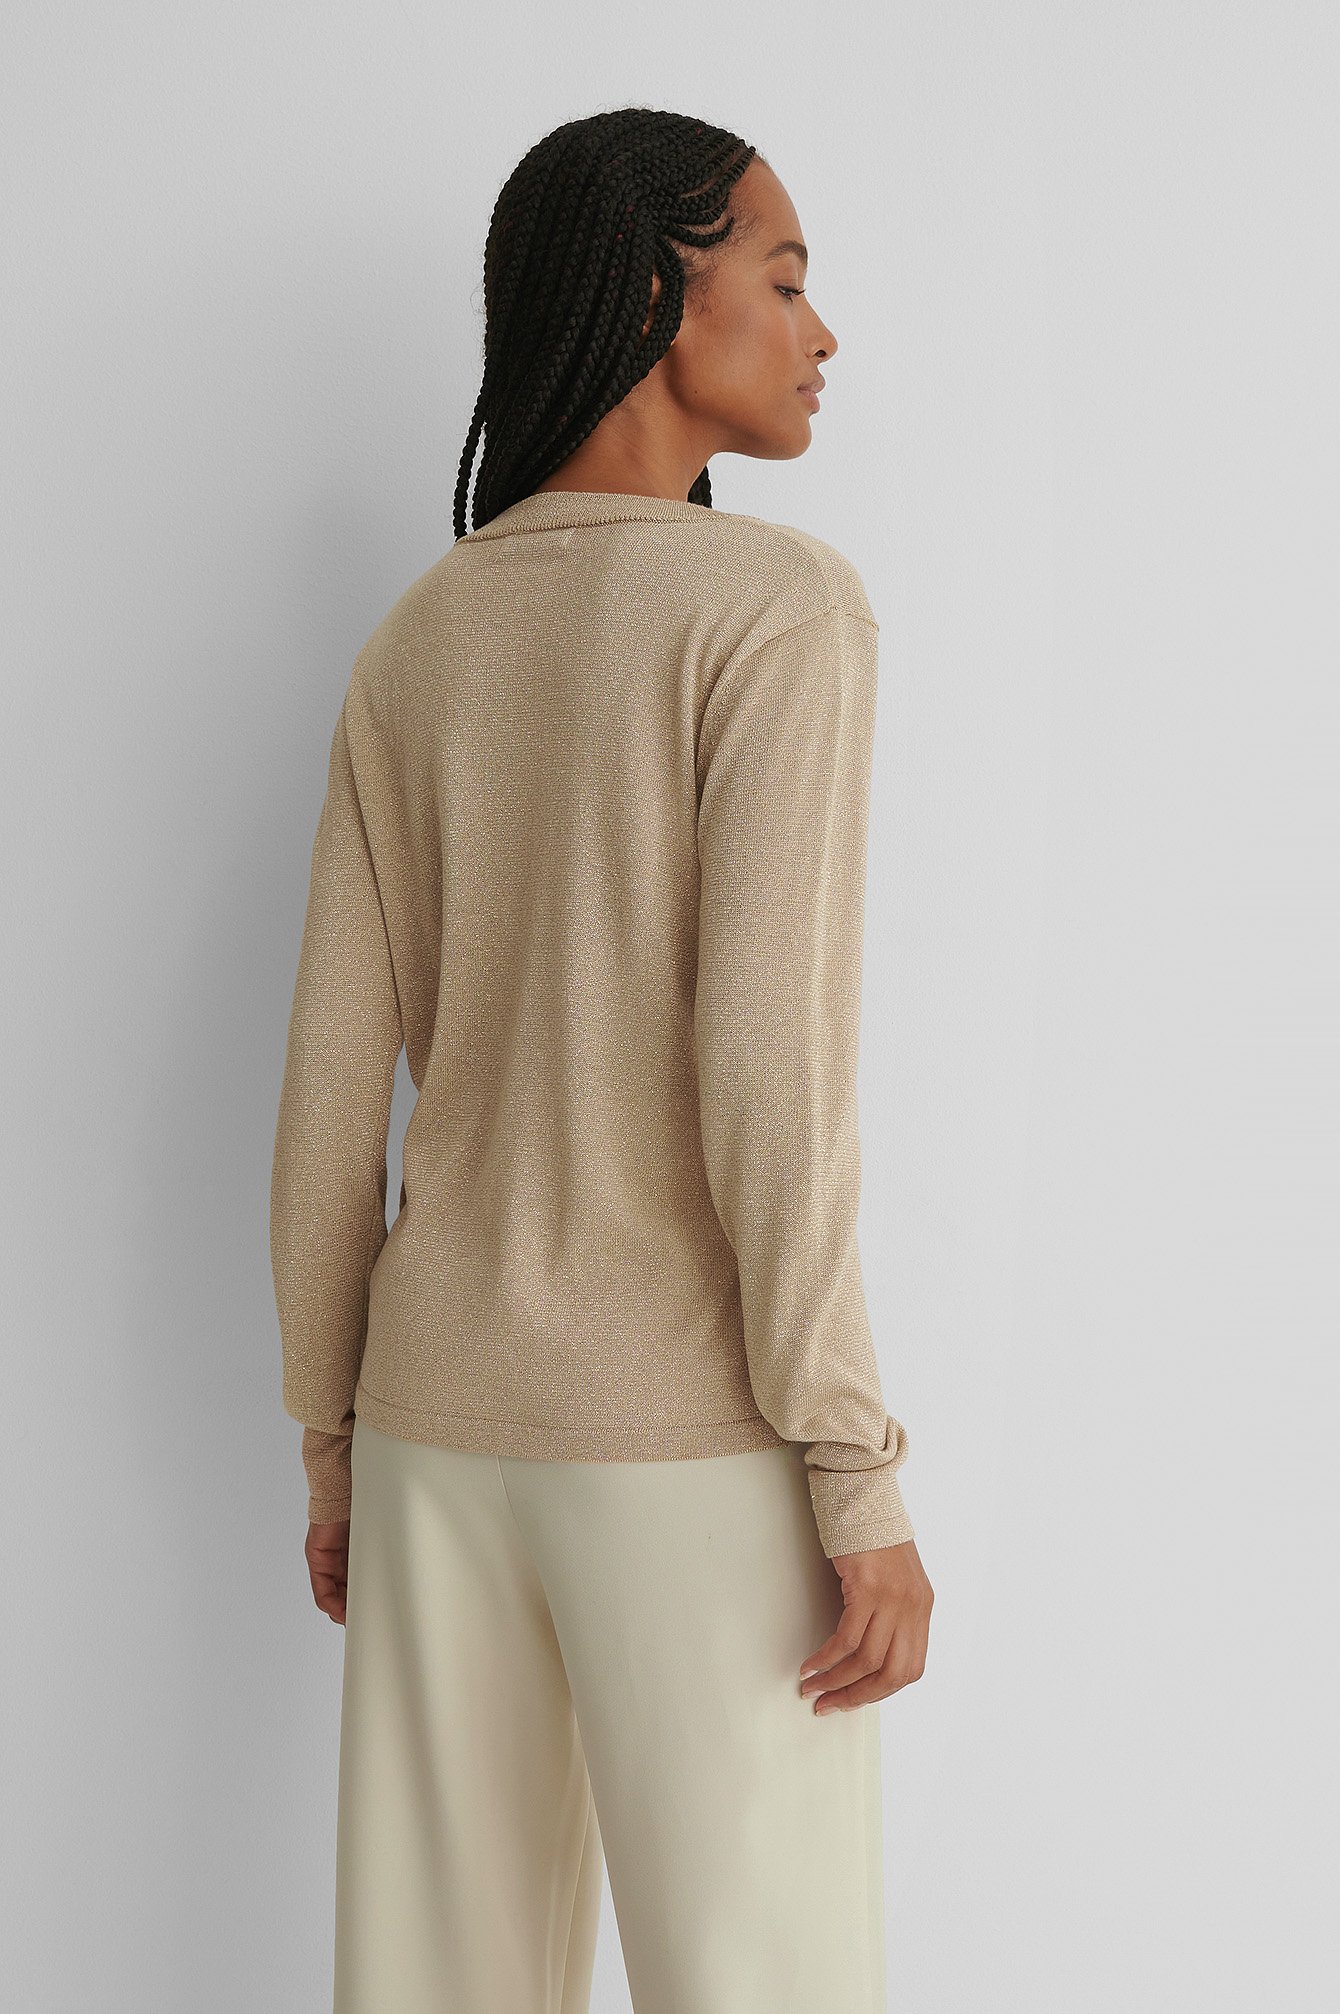 Beige Long Sleeve Glitter Knitted Sweater